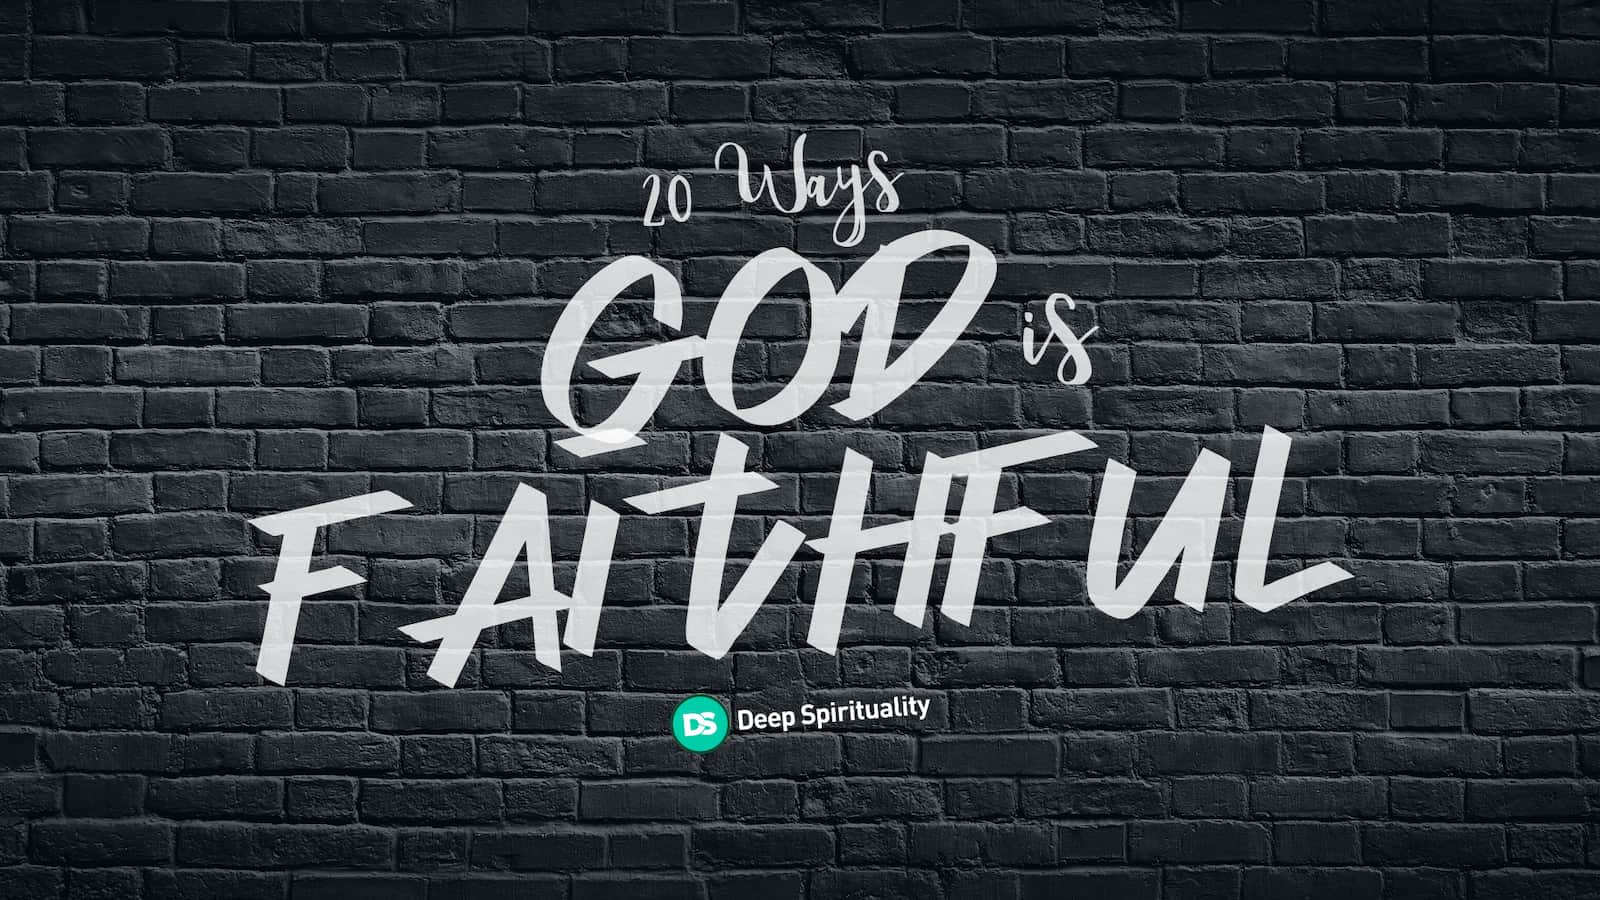 god is faithful